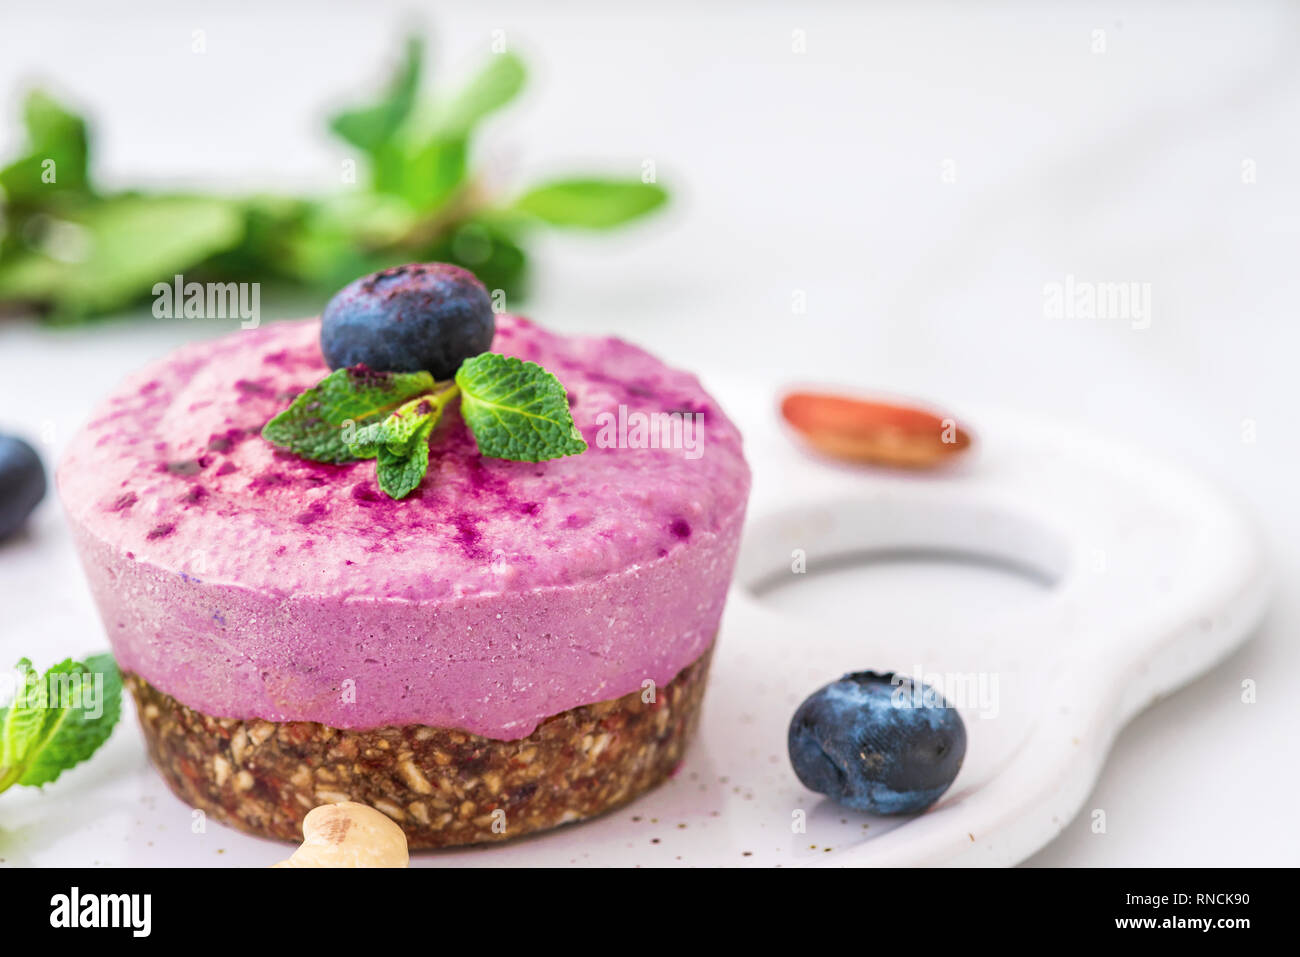 Blueberry et de l'açaï vegan gâteau de noix de cajou avec les baies fraîches, menthe, noix. La nourriture végétalienne saine concept. close up Banque D'Images